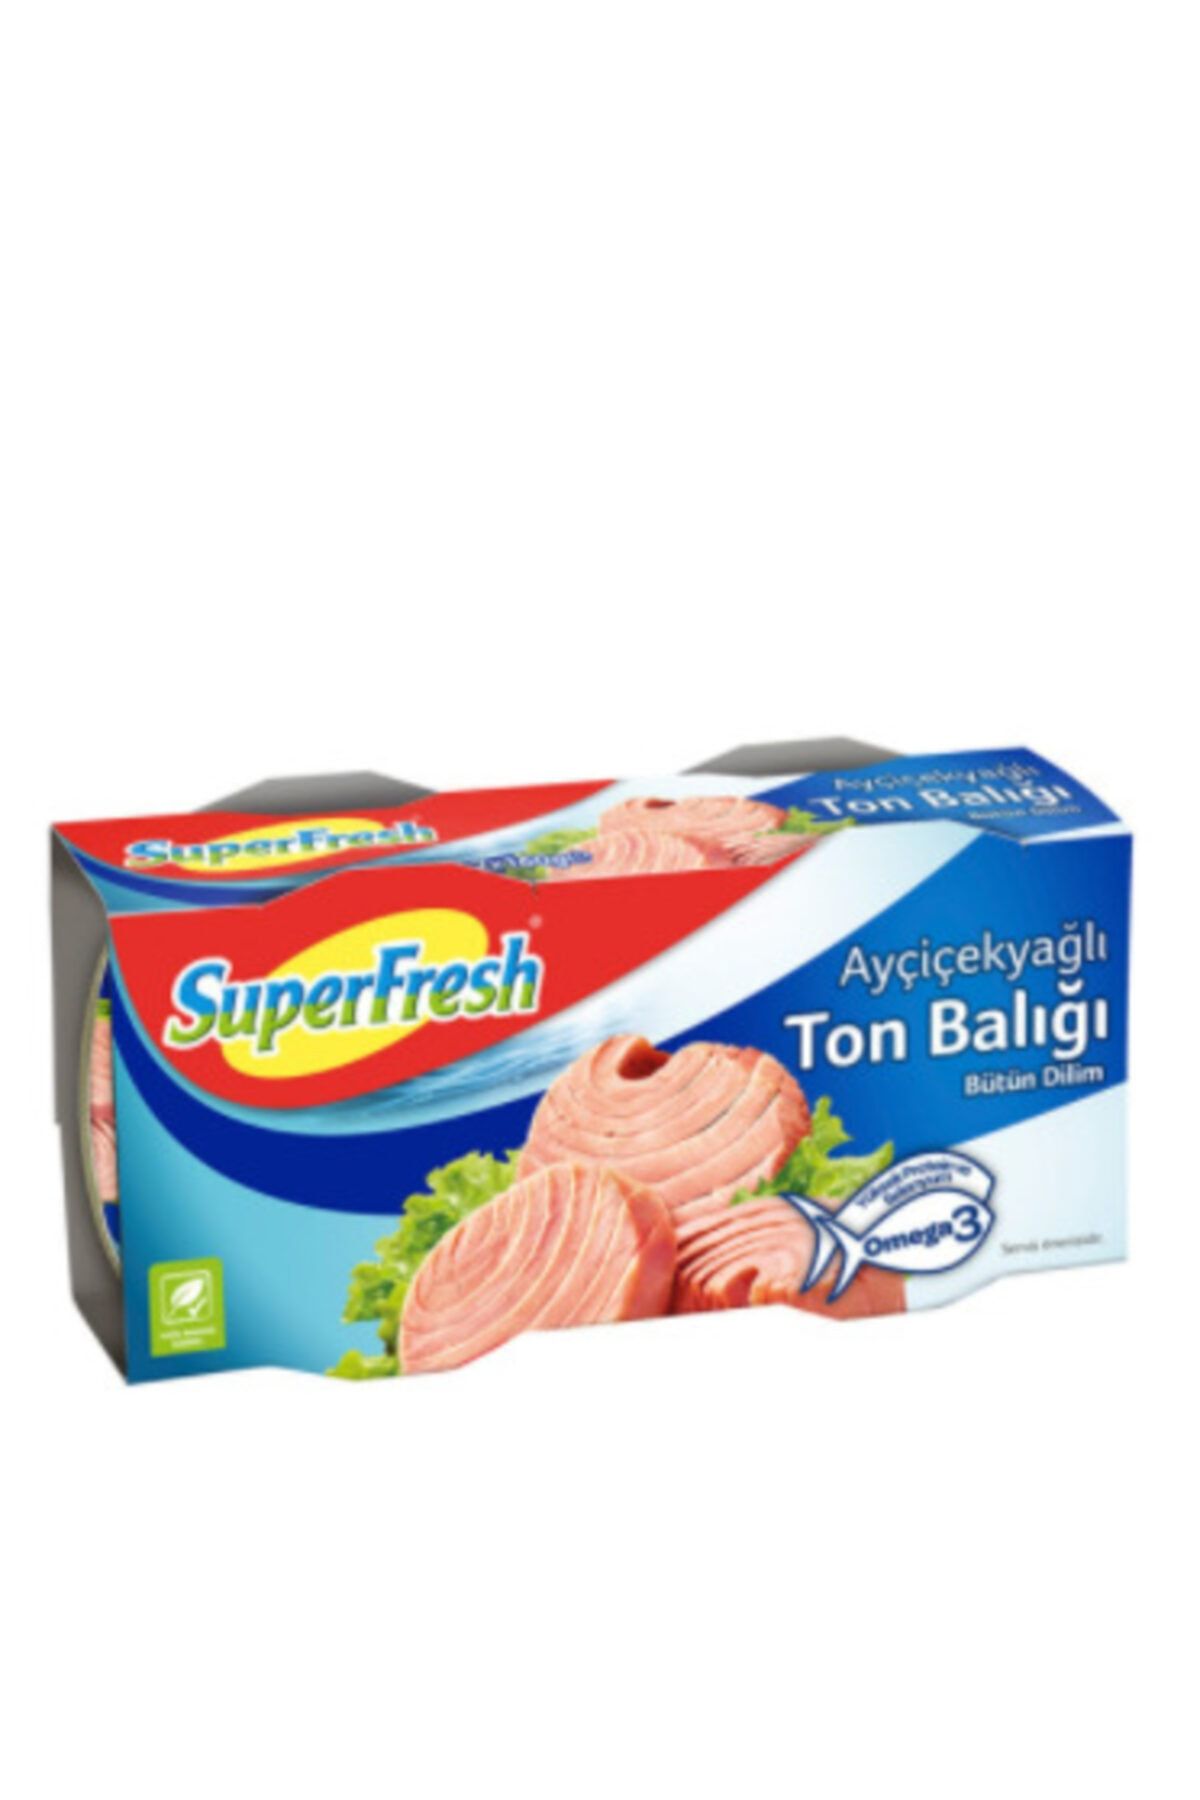 SuperFresh Bütün Dilim Ton Balığı 2x 160 gr